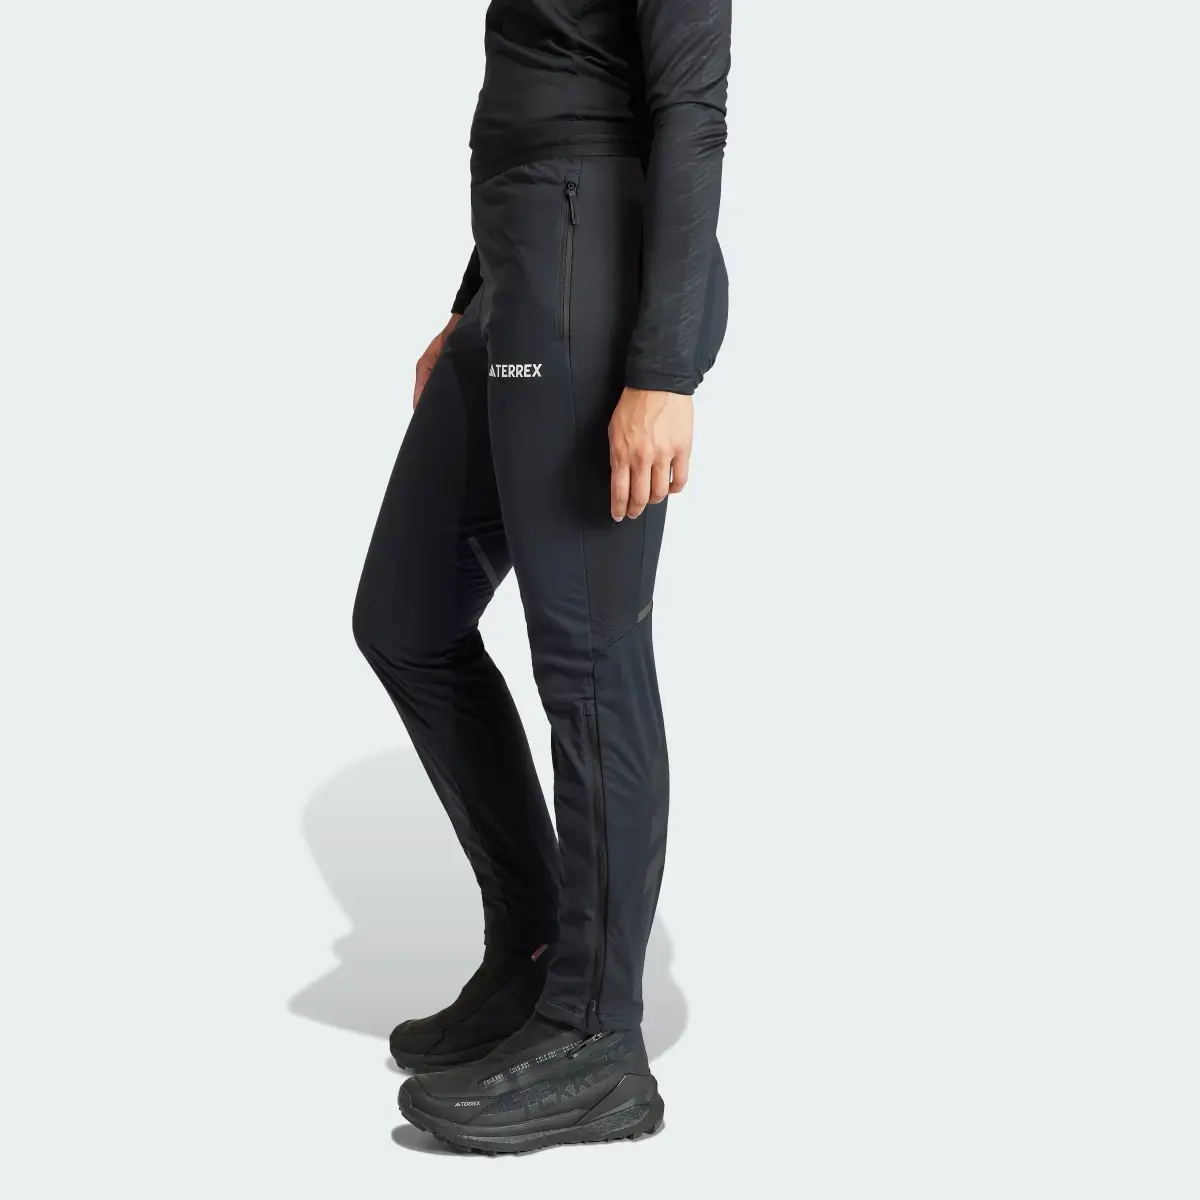 Adidas Spodnie Terrex Xperior Cross Country Ski Soft Shell. 2